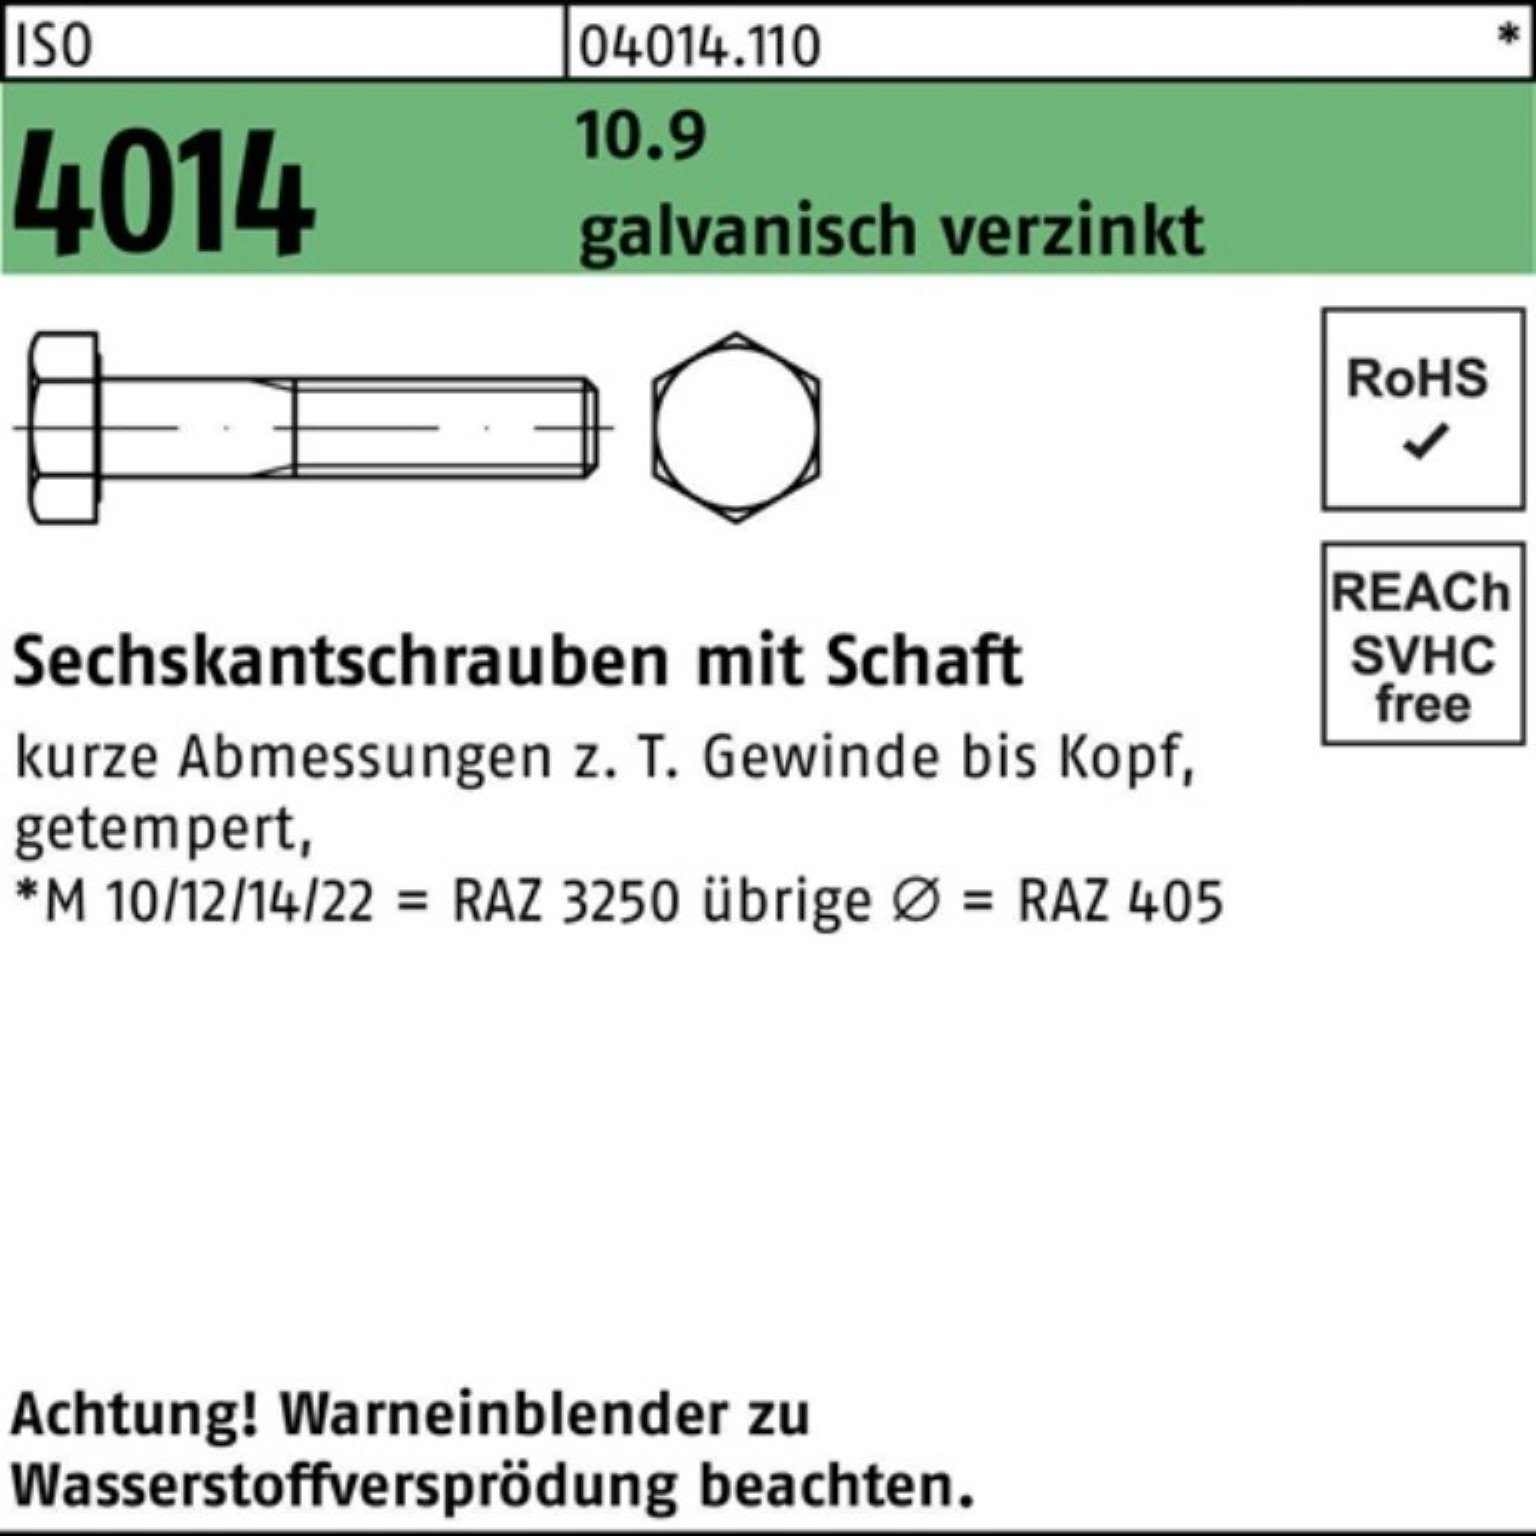 ISO Sechskantschraube 110 Schaft Bufab 4014 galv.verz. M27x Pack 10.9 Sechskantschraube 100er